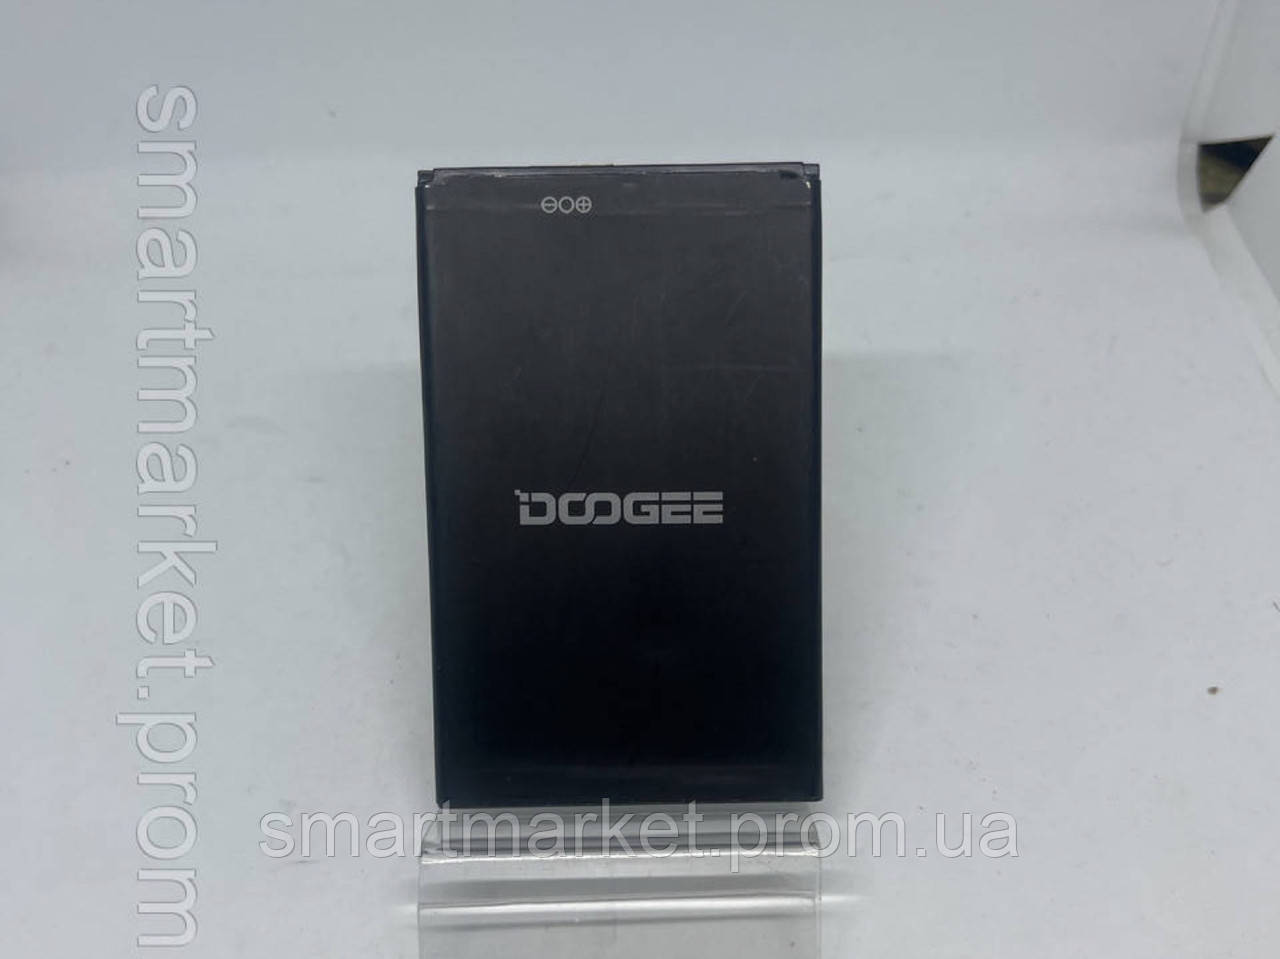 Акумулятори Doogee BAT16533000 (X9 MINI/ X9 PRO) 3000mAh 01634 Original